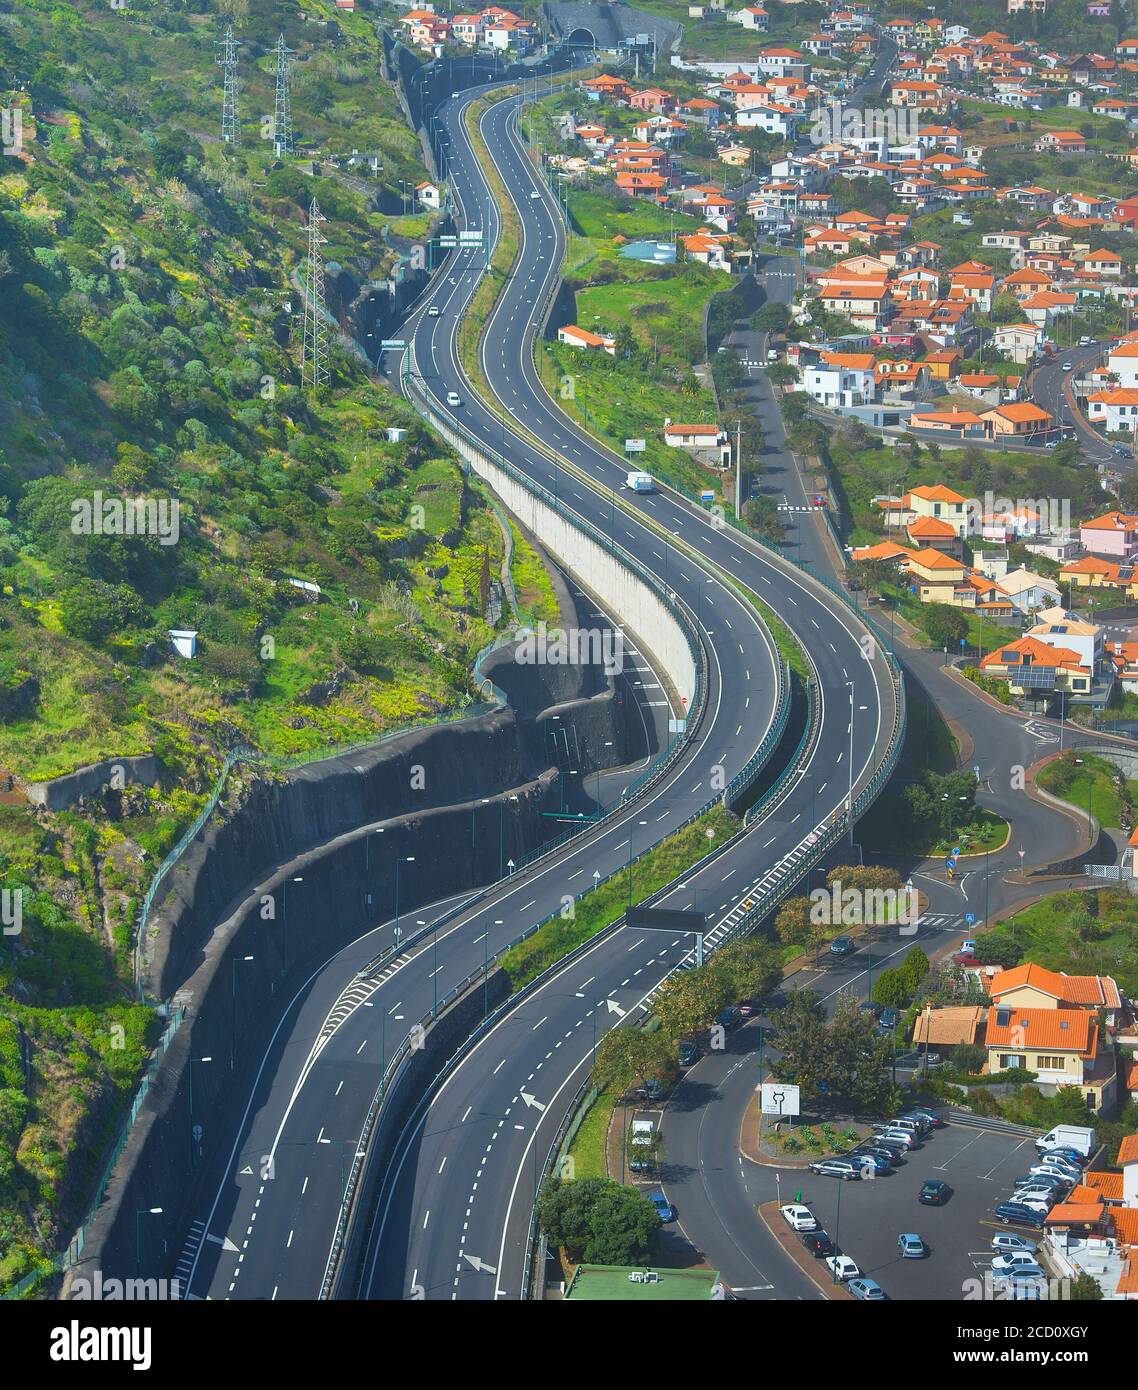 Luftansicht der Autobahn. Mochico, Insel Madeira, Portugal Stockfoto